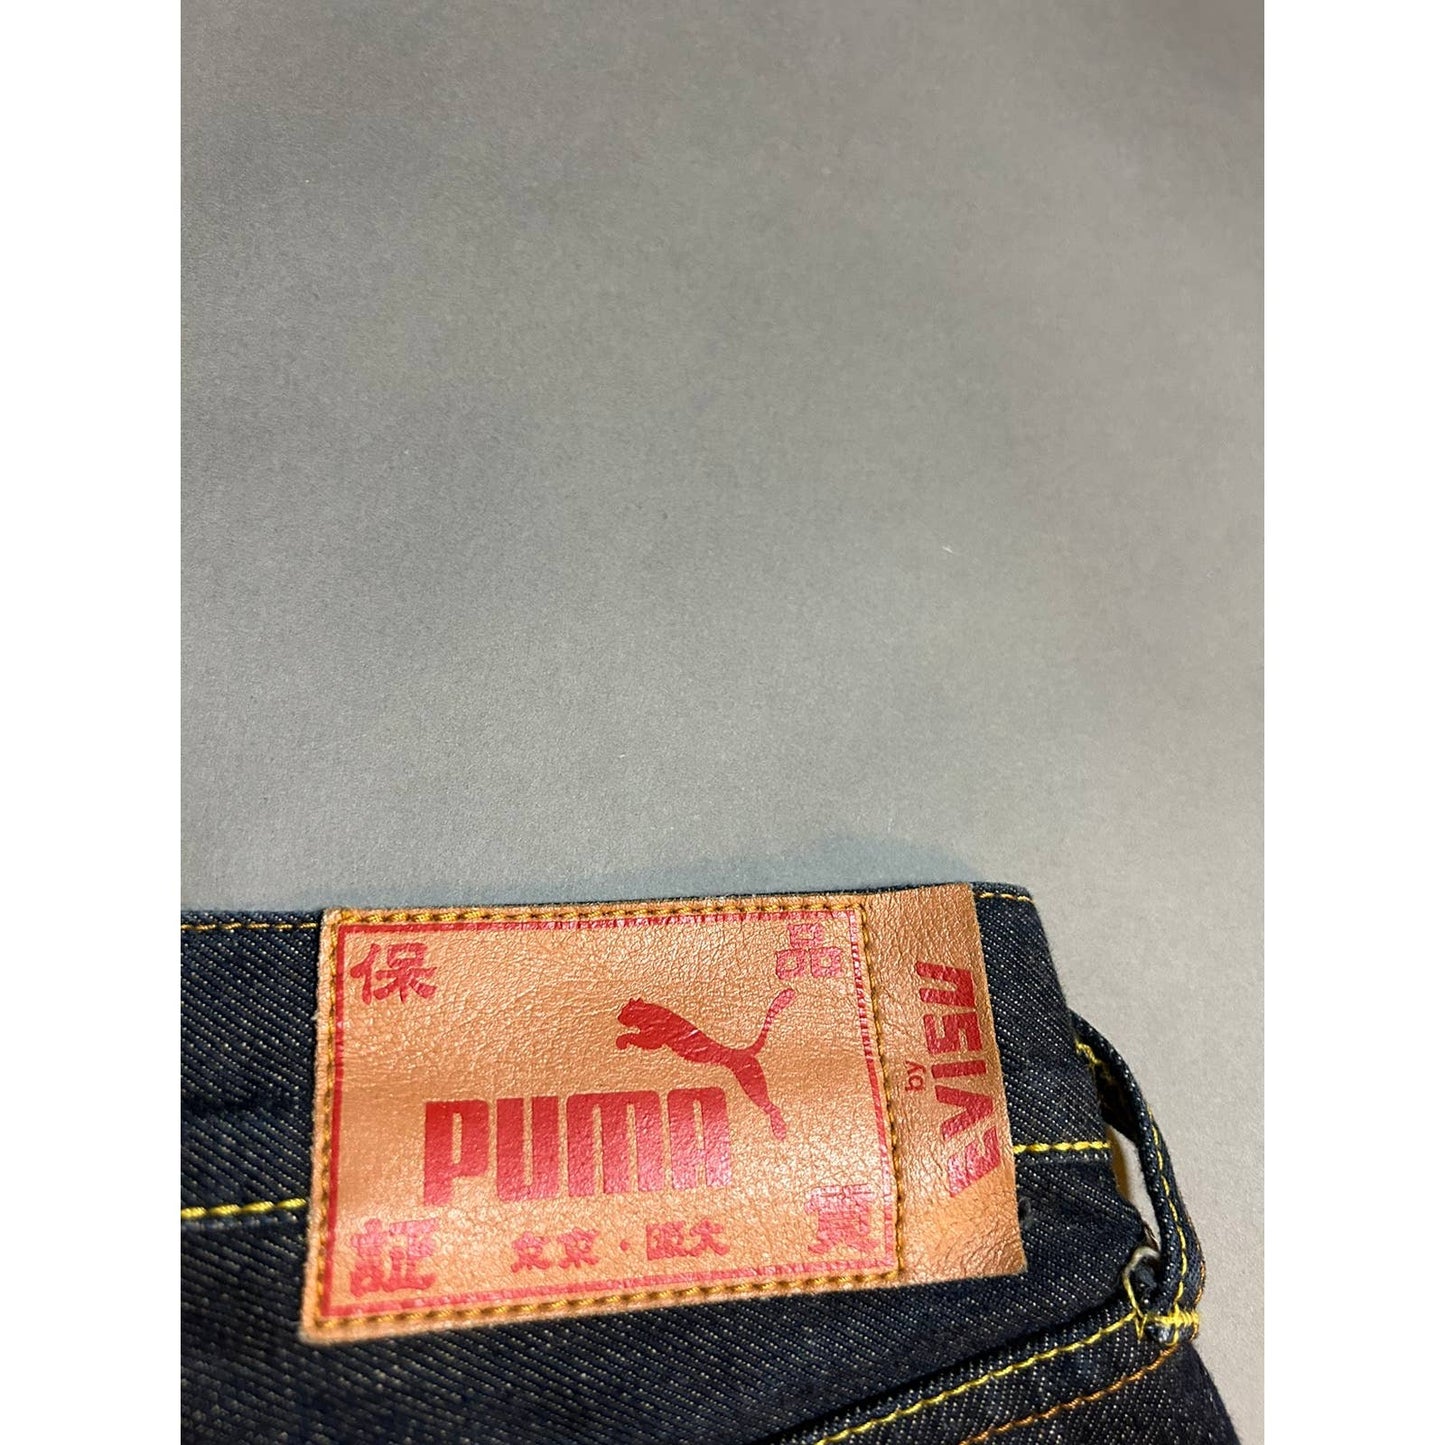 Evisu Puma big logo selvedge navy jeans daicock Y2K